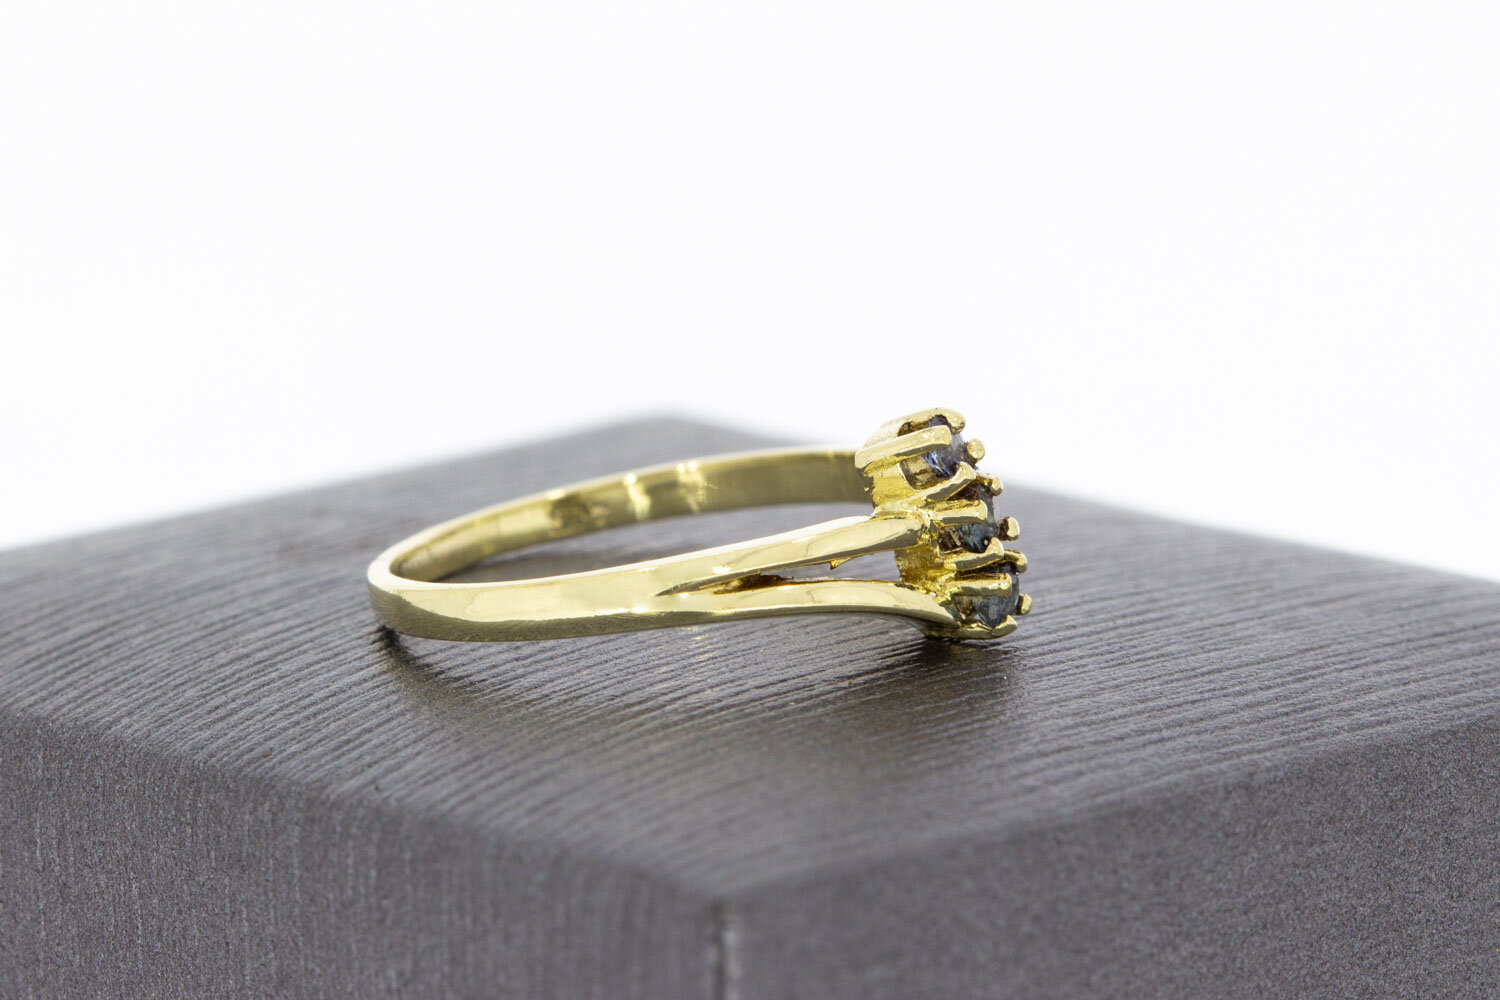 Vintage Saphir geschwungene ring 14 Karat Gold - 17,5 mm